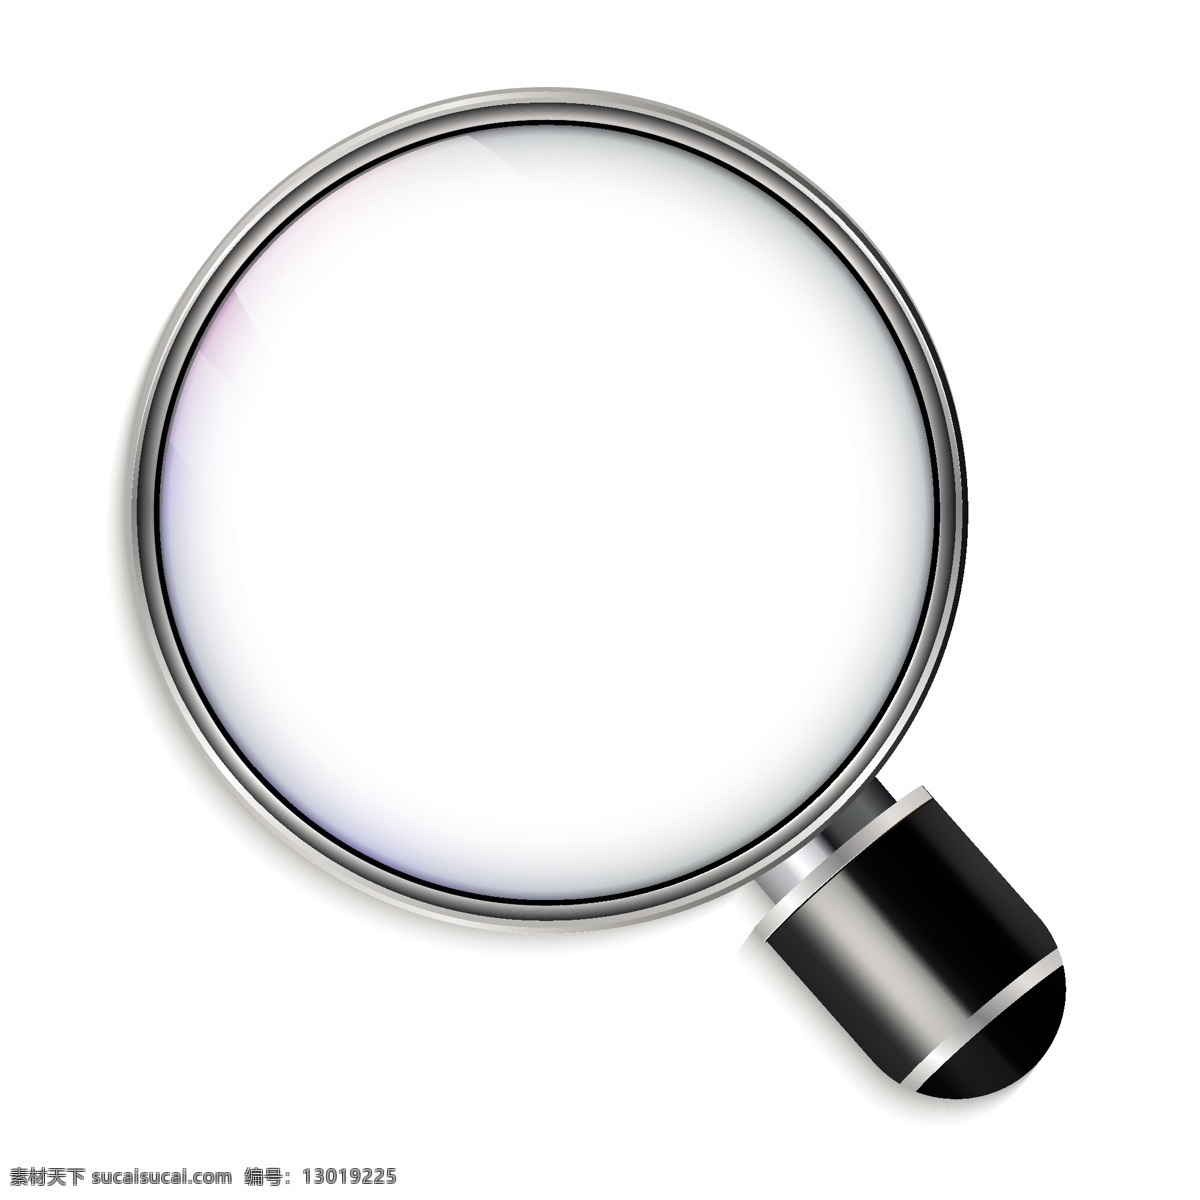 放大镜 写实 背景 图标 艺术 白色背景 标志 玻璃 白色 搜索 符号 镜头 工具 背景白色 搜索图标 缩放 对象 仪器 外观